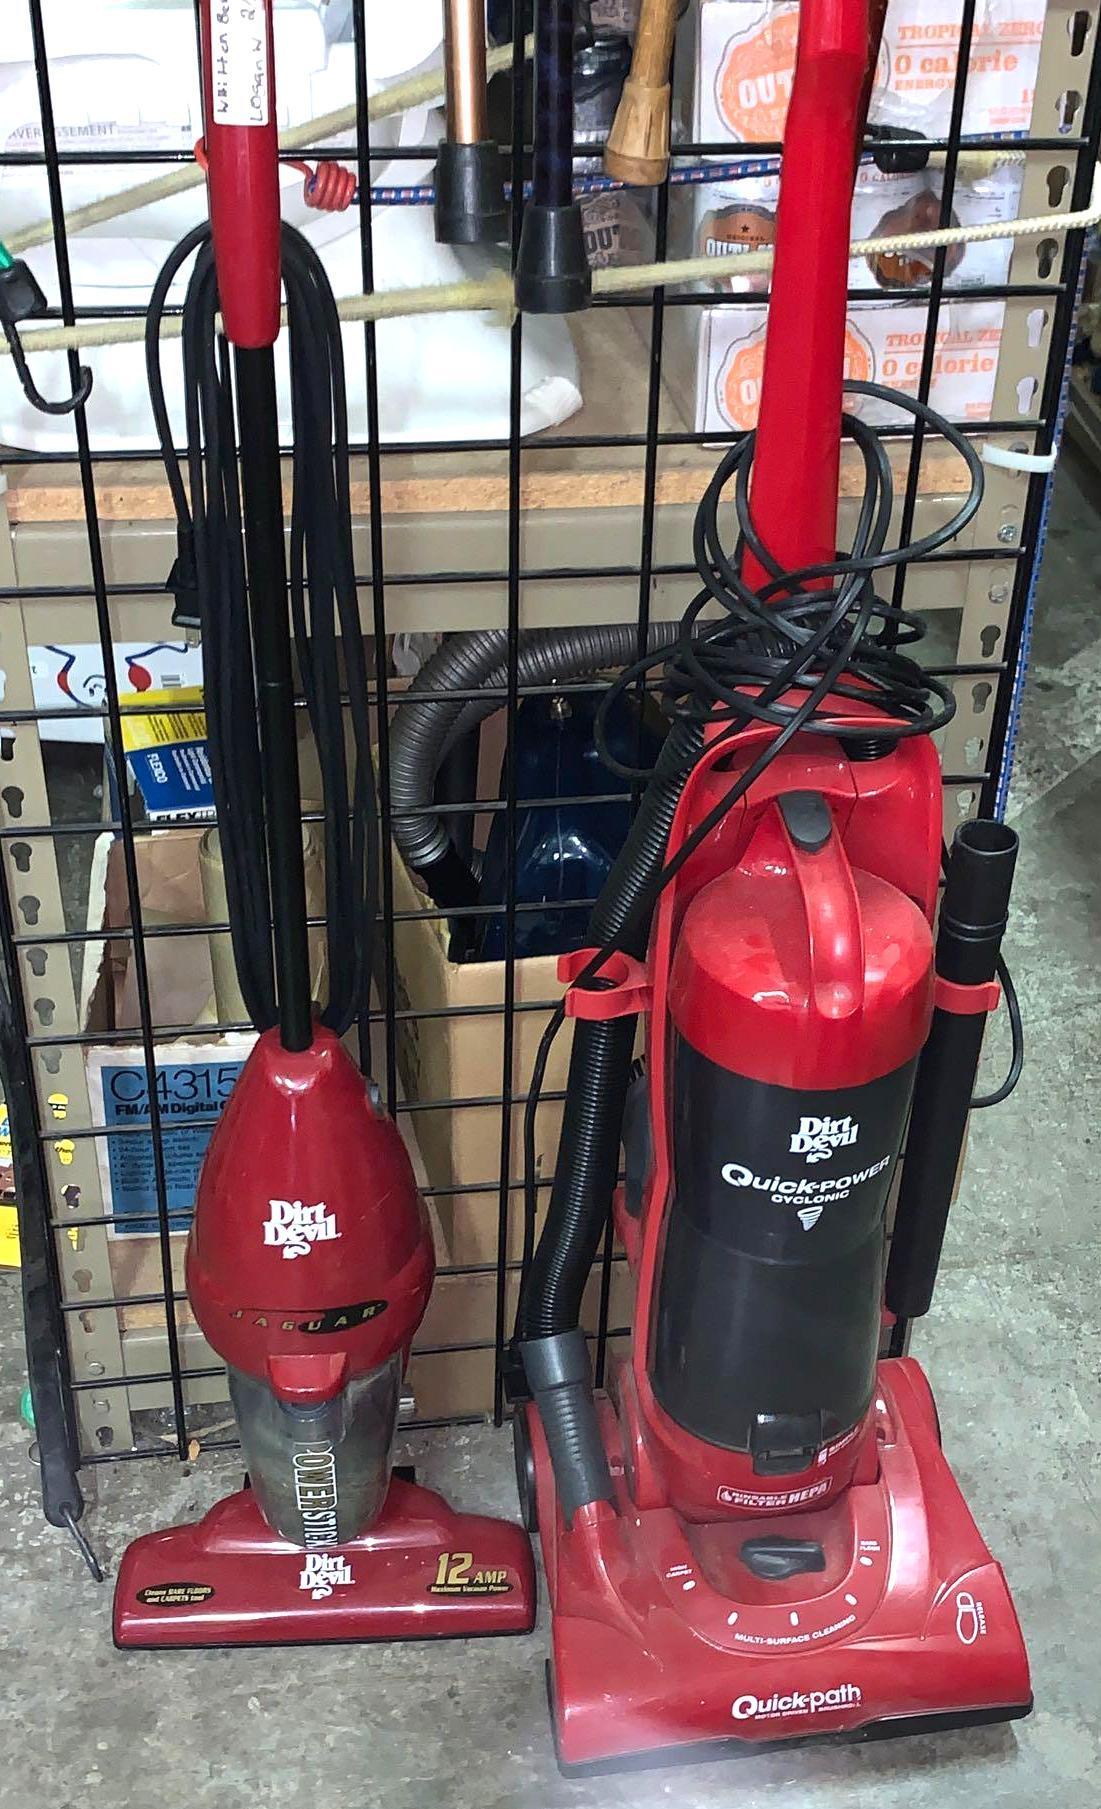 2 Dirt Devil Vacuums- works